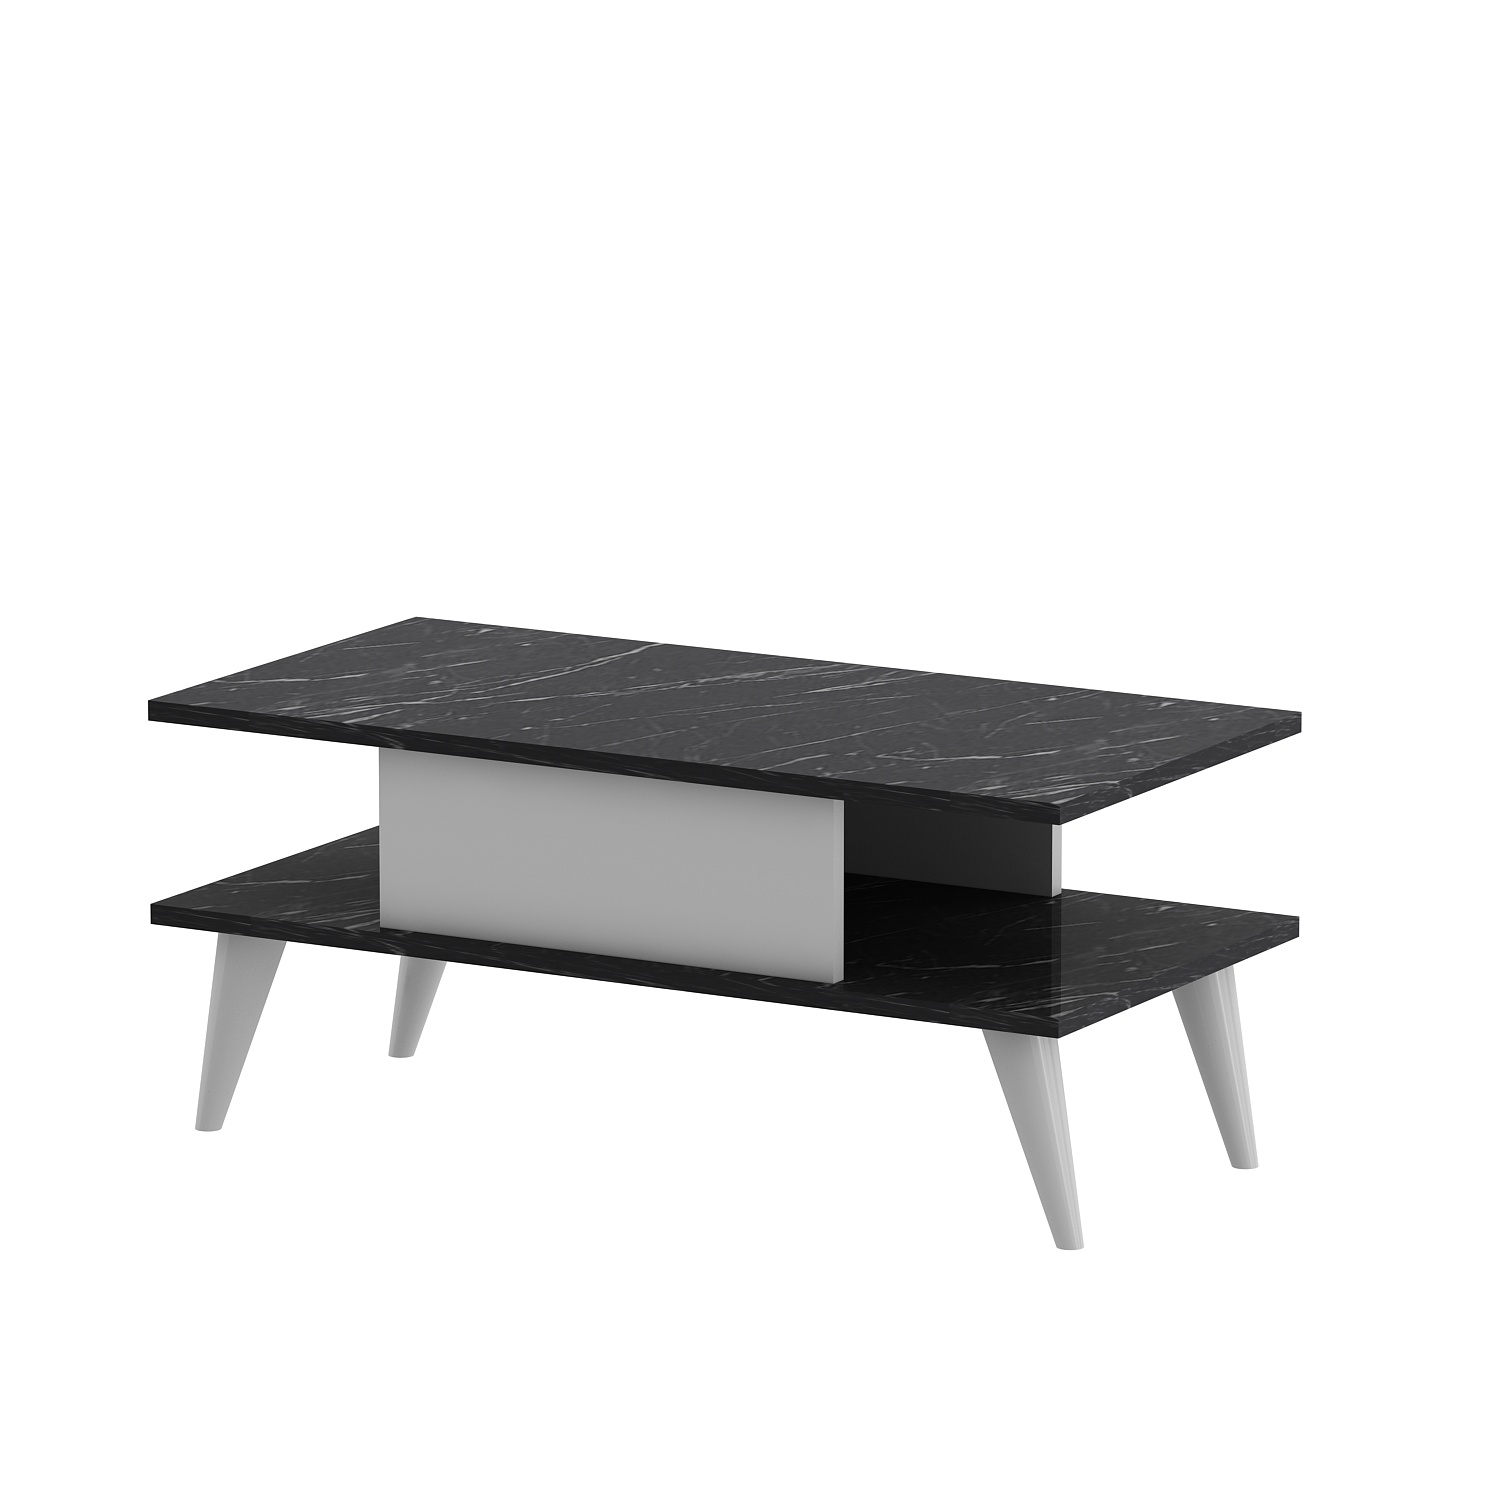 Carle Tavolino scandinavo L90xH40cm effetto marmo bianco e nero